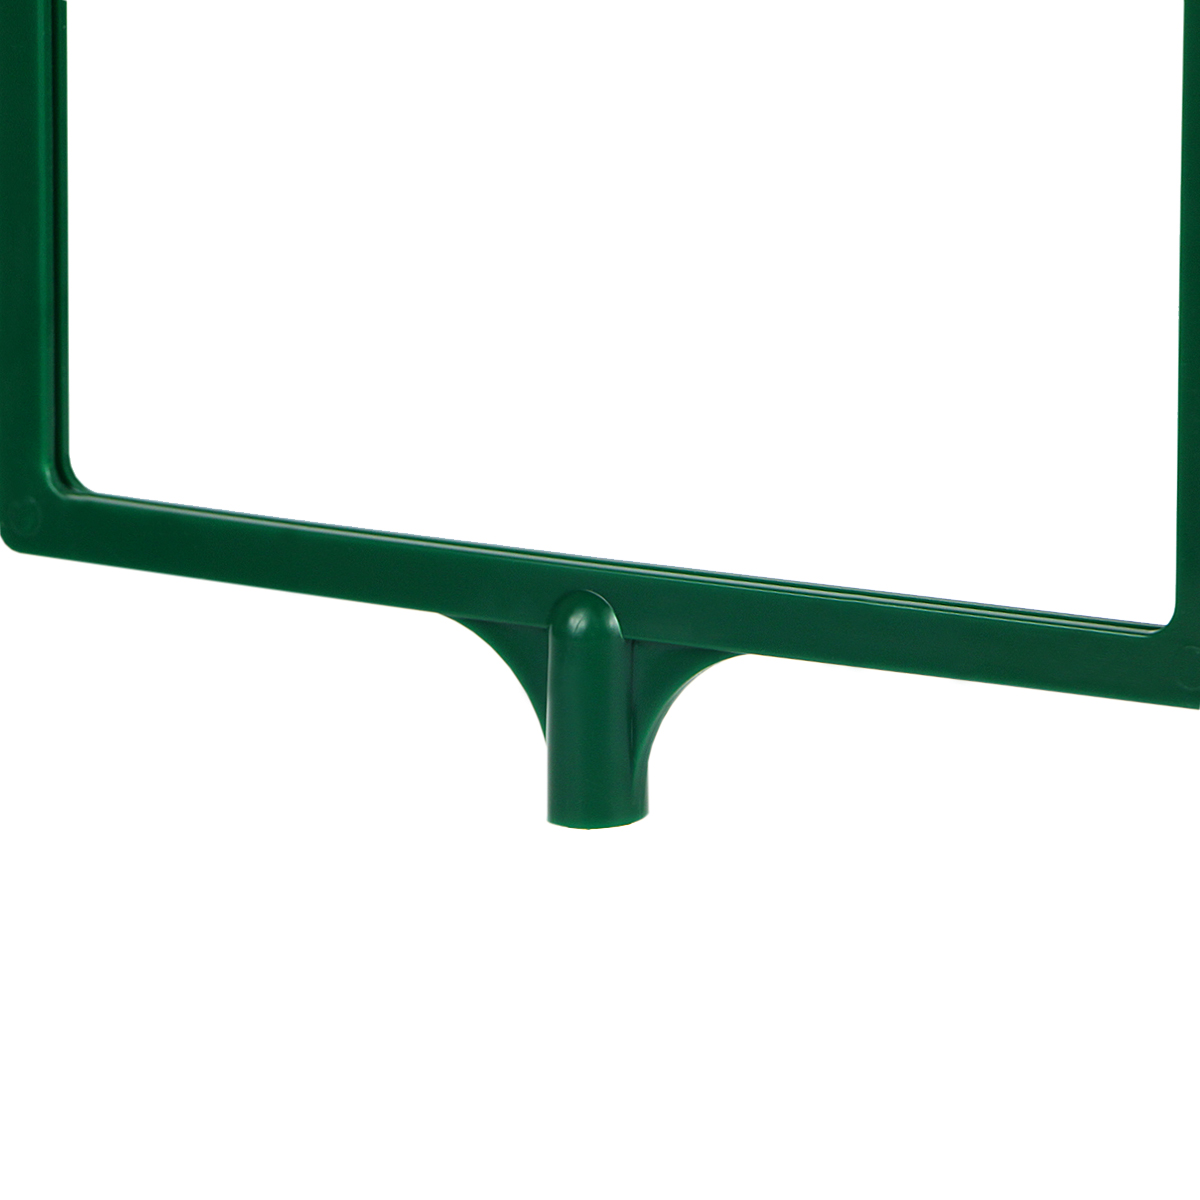 Рамка с интегрированным Т-держателем PFT-A4, цвет зеленый